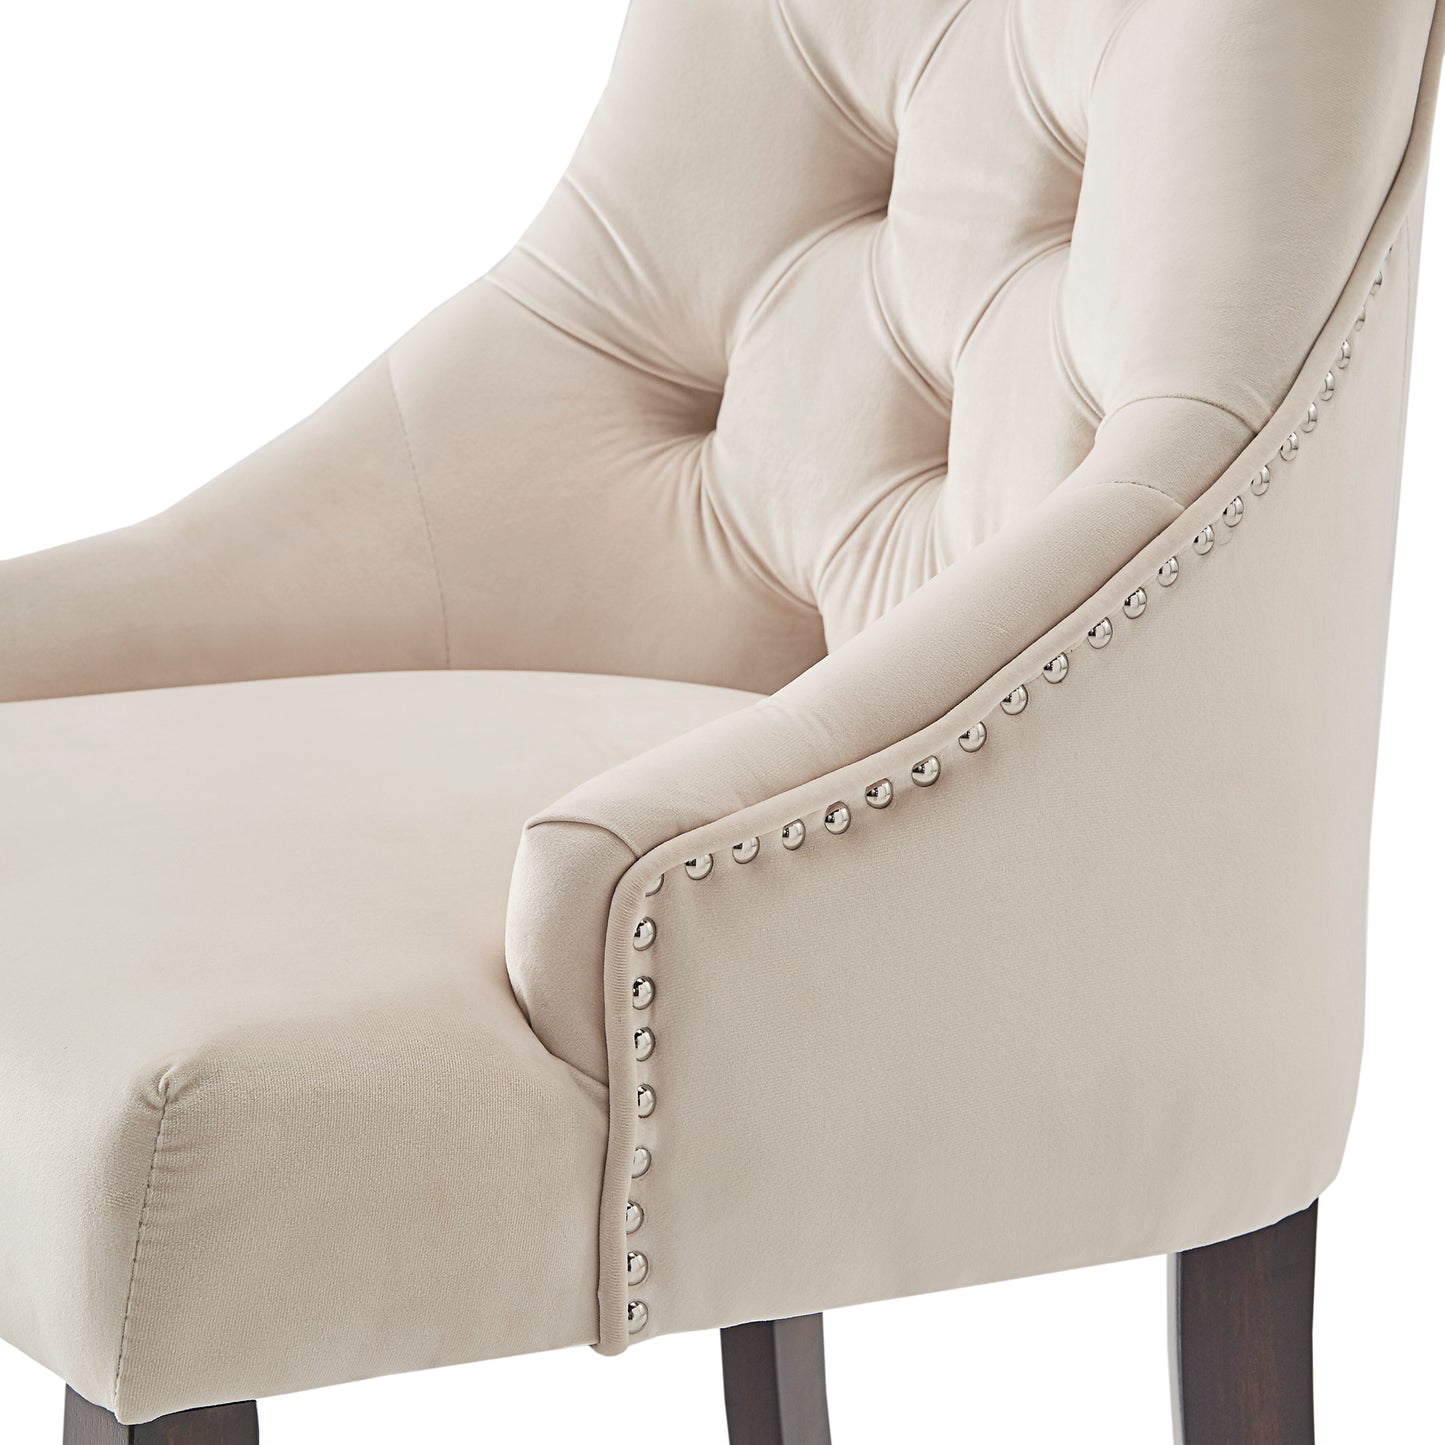 Velvet Button Tufted Wingback Dining Chairs (Set of 2) - Beige Velvet